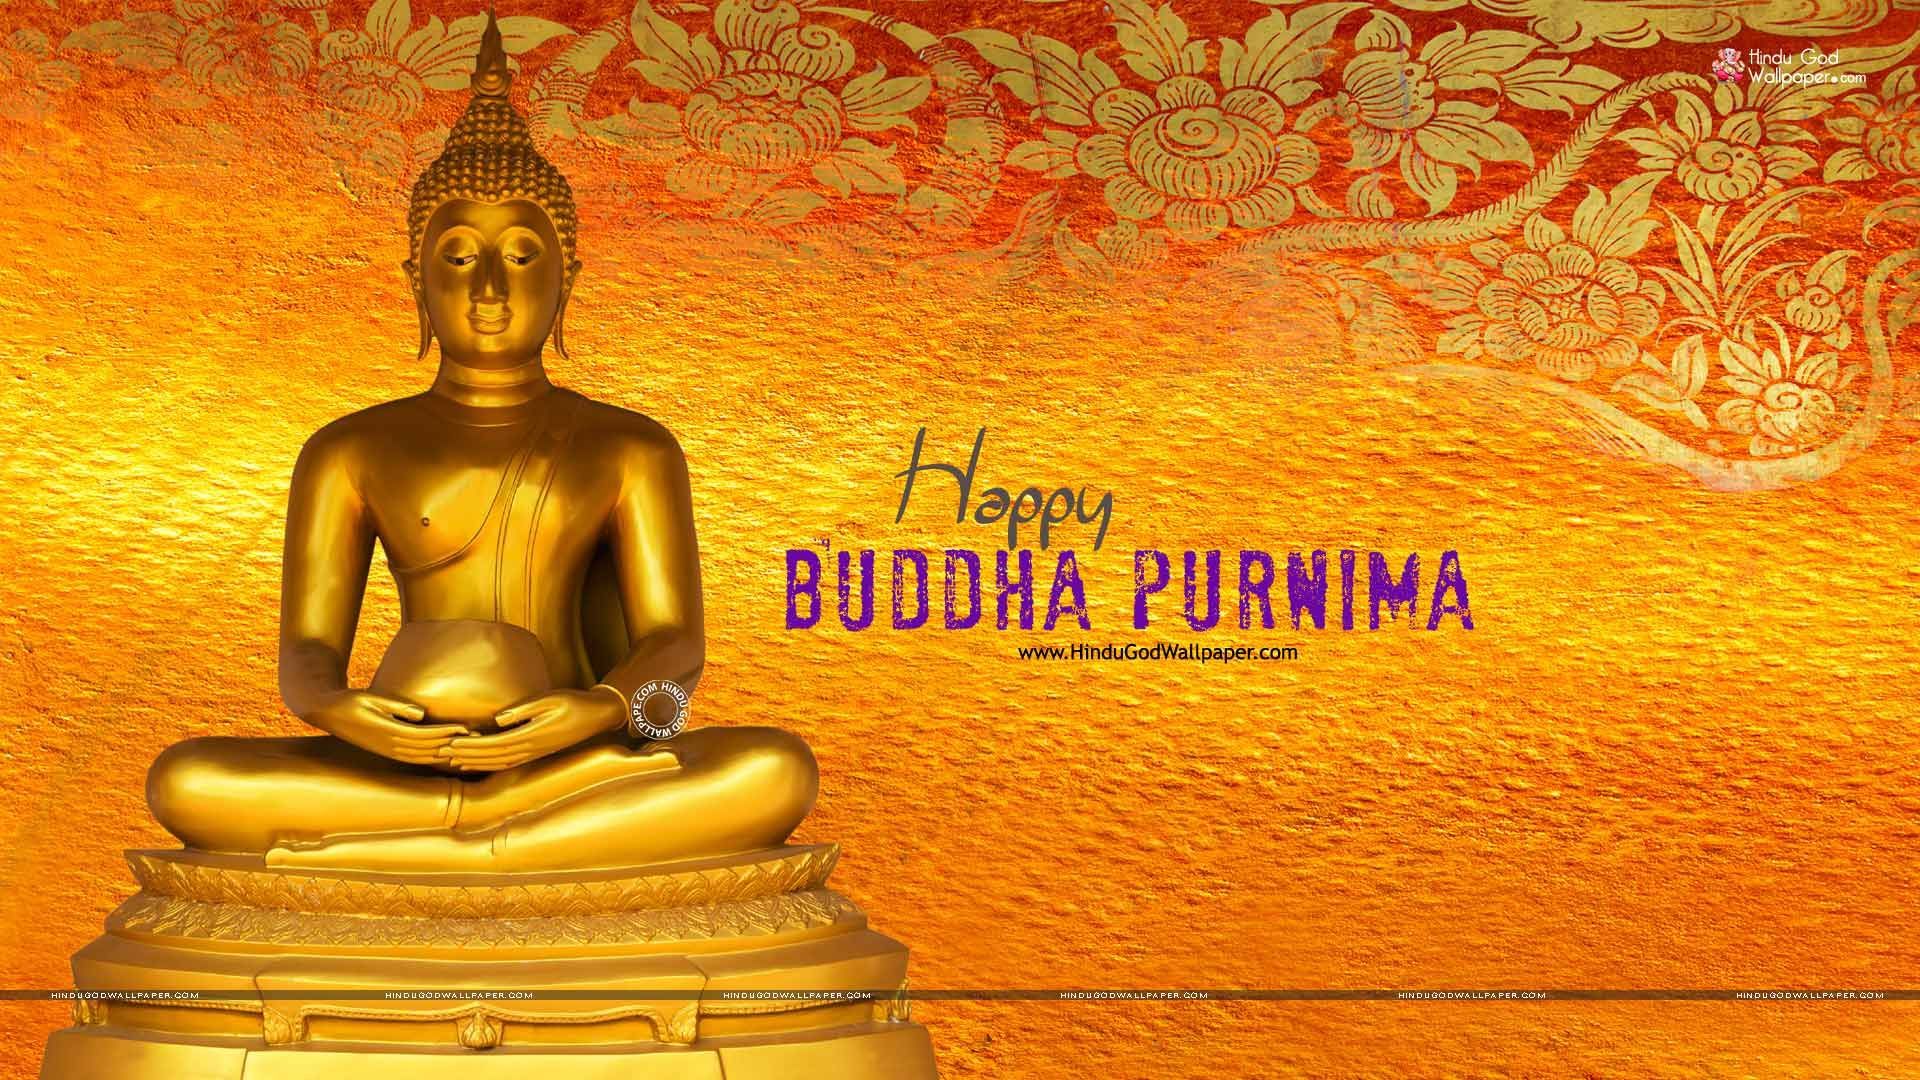 1080p Buddha Purnima HD Wallpaper Full Size Download. Lord buddha wallpaper, Buddha, Buddha art